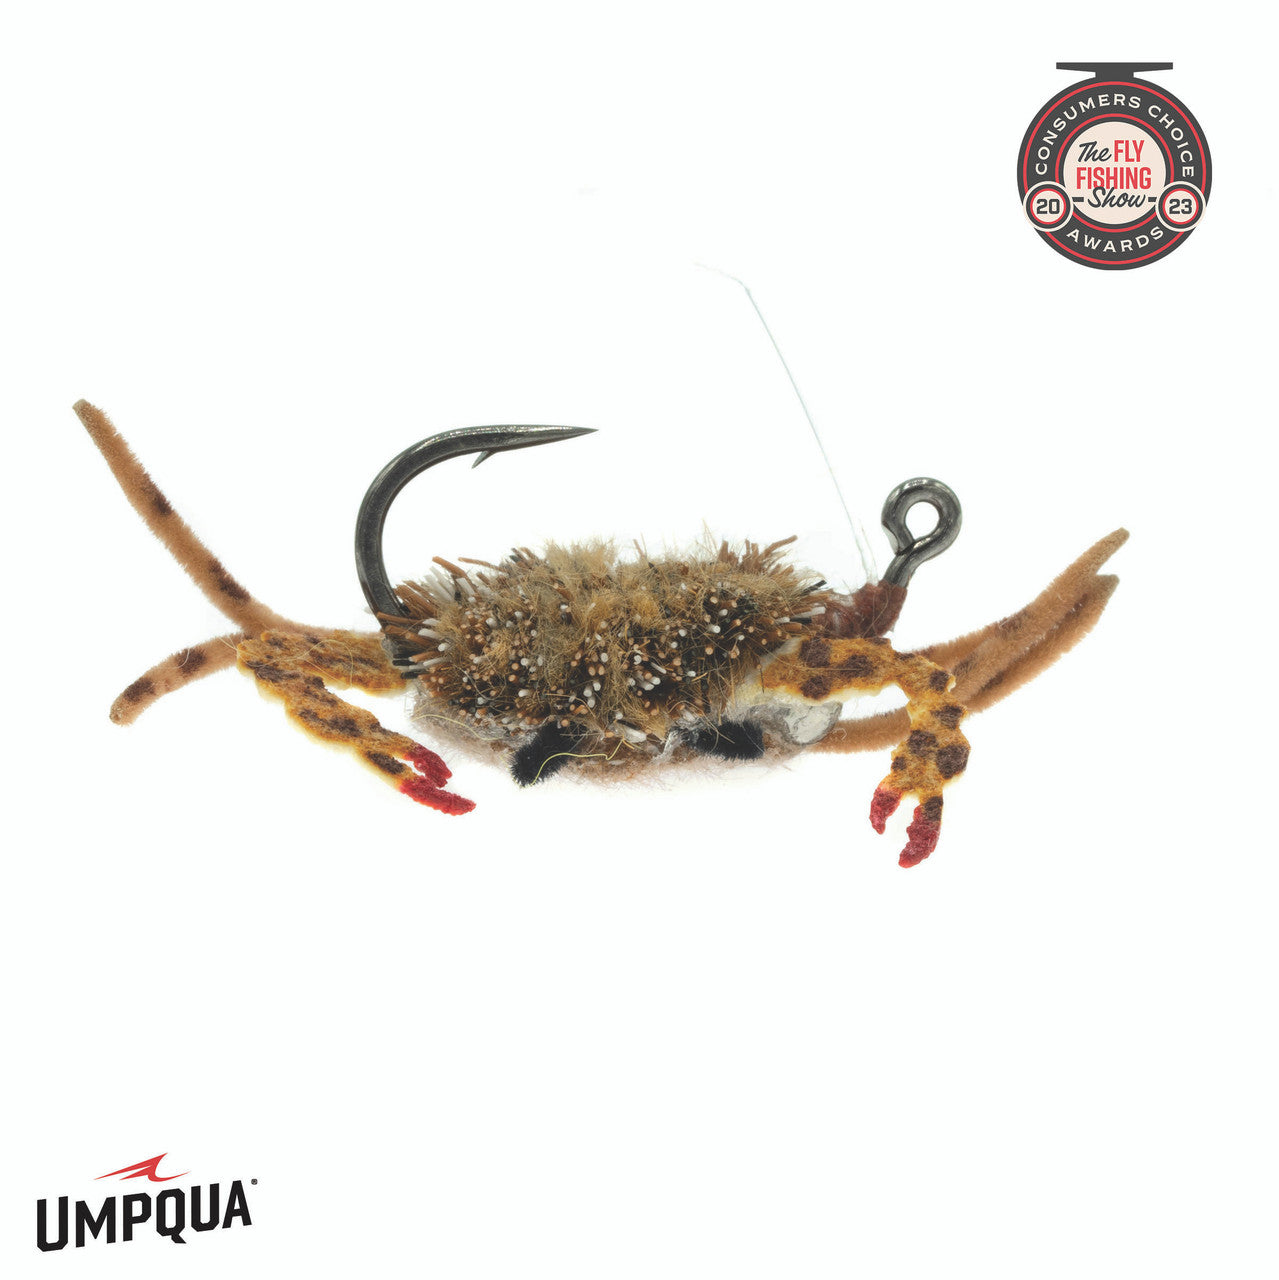 Umpqua's Danger Muffin Crab